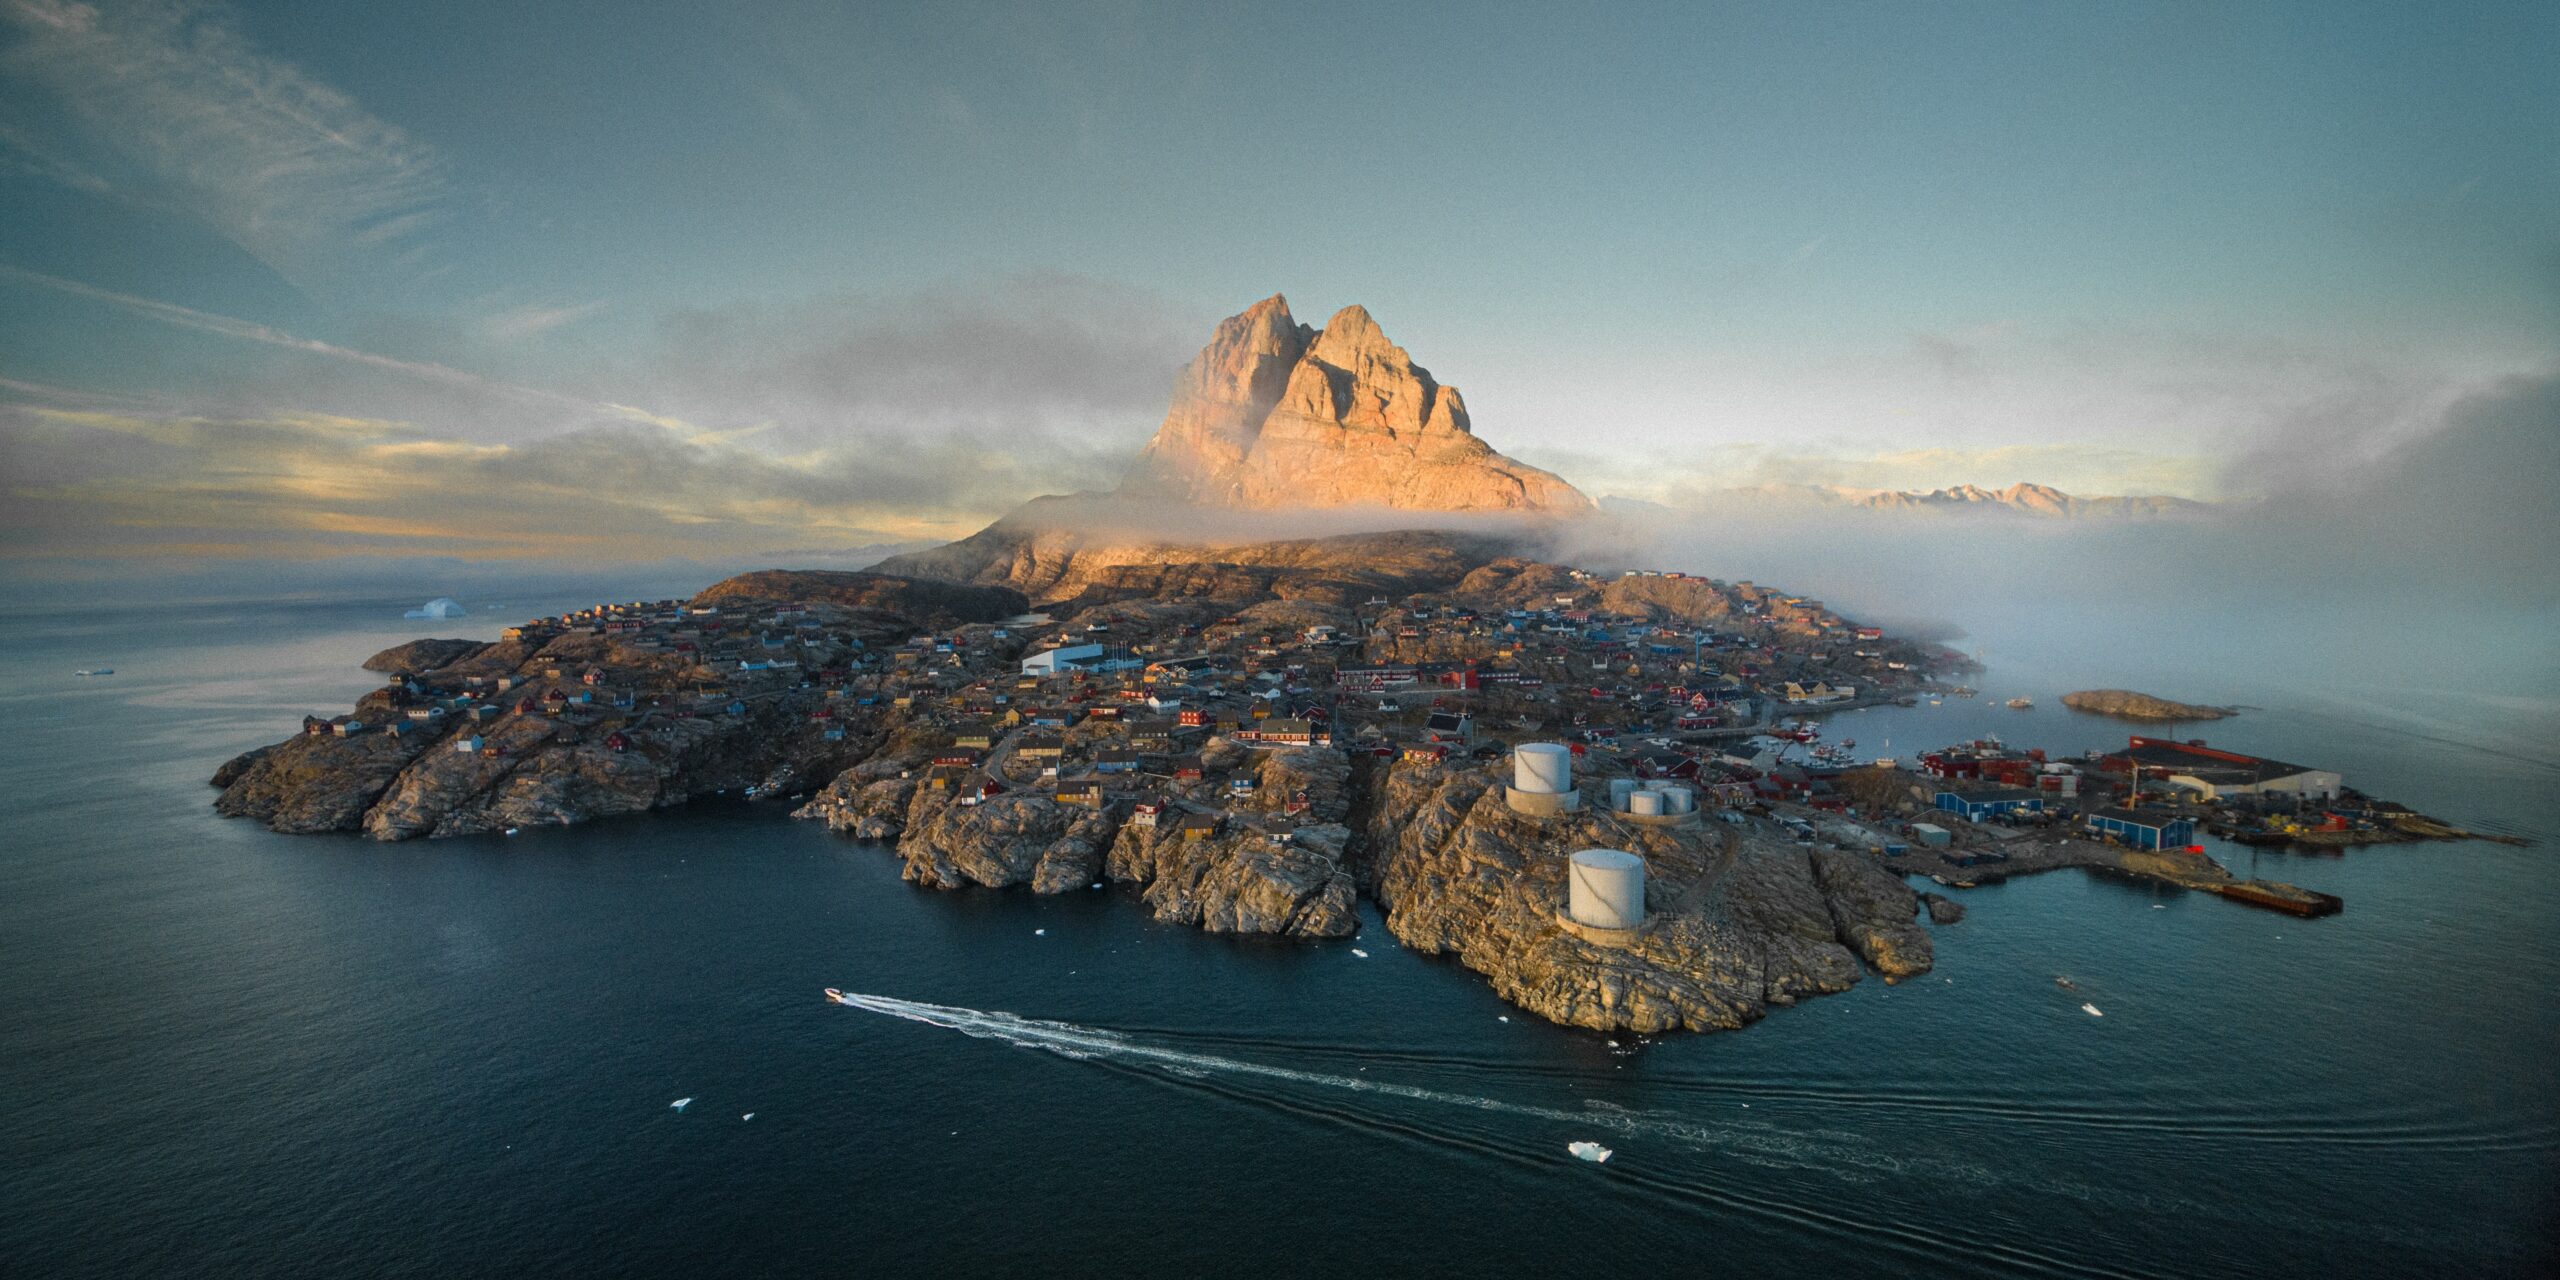 Uummannaq Island, Greenland. Photo by Mads Schmidt Rasmussen.